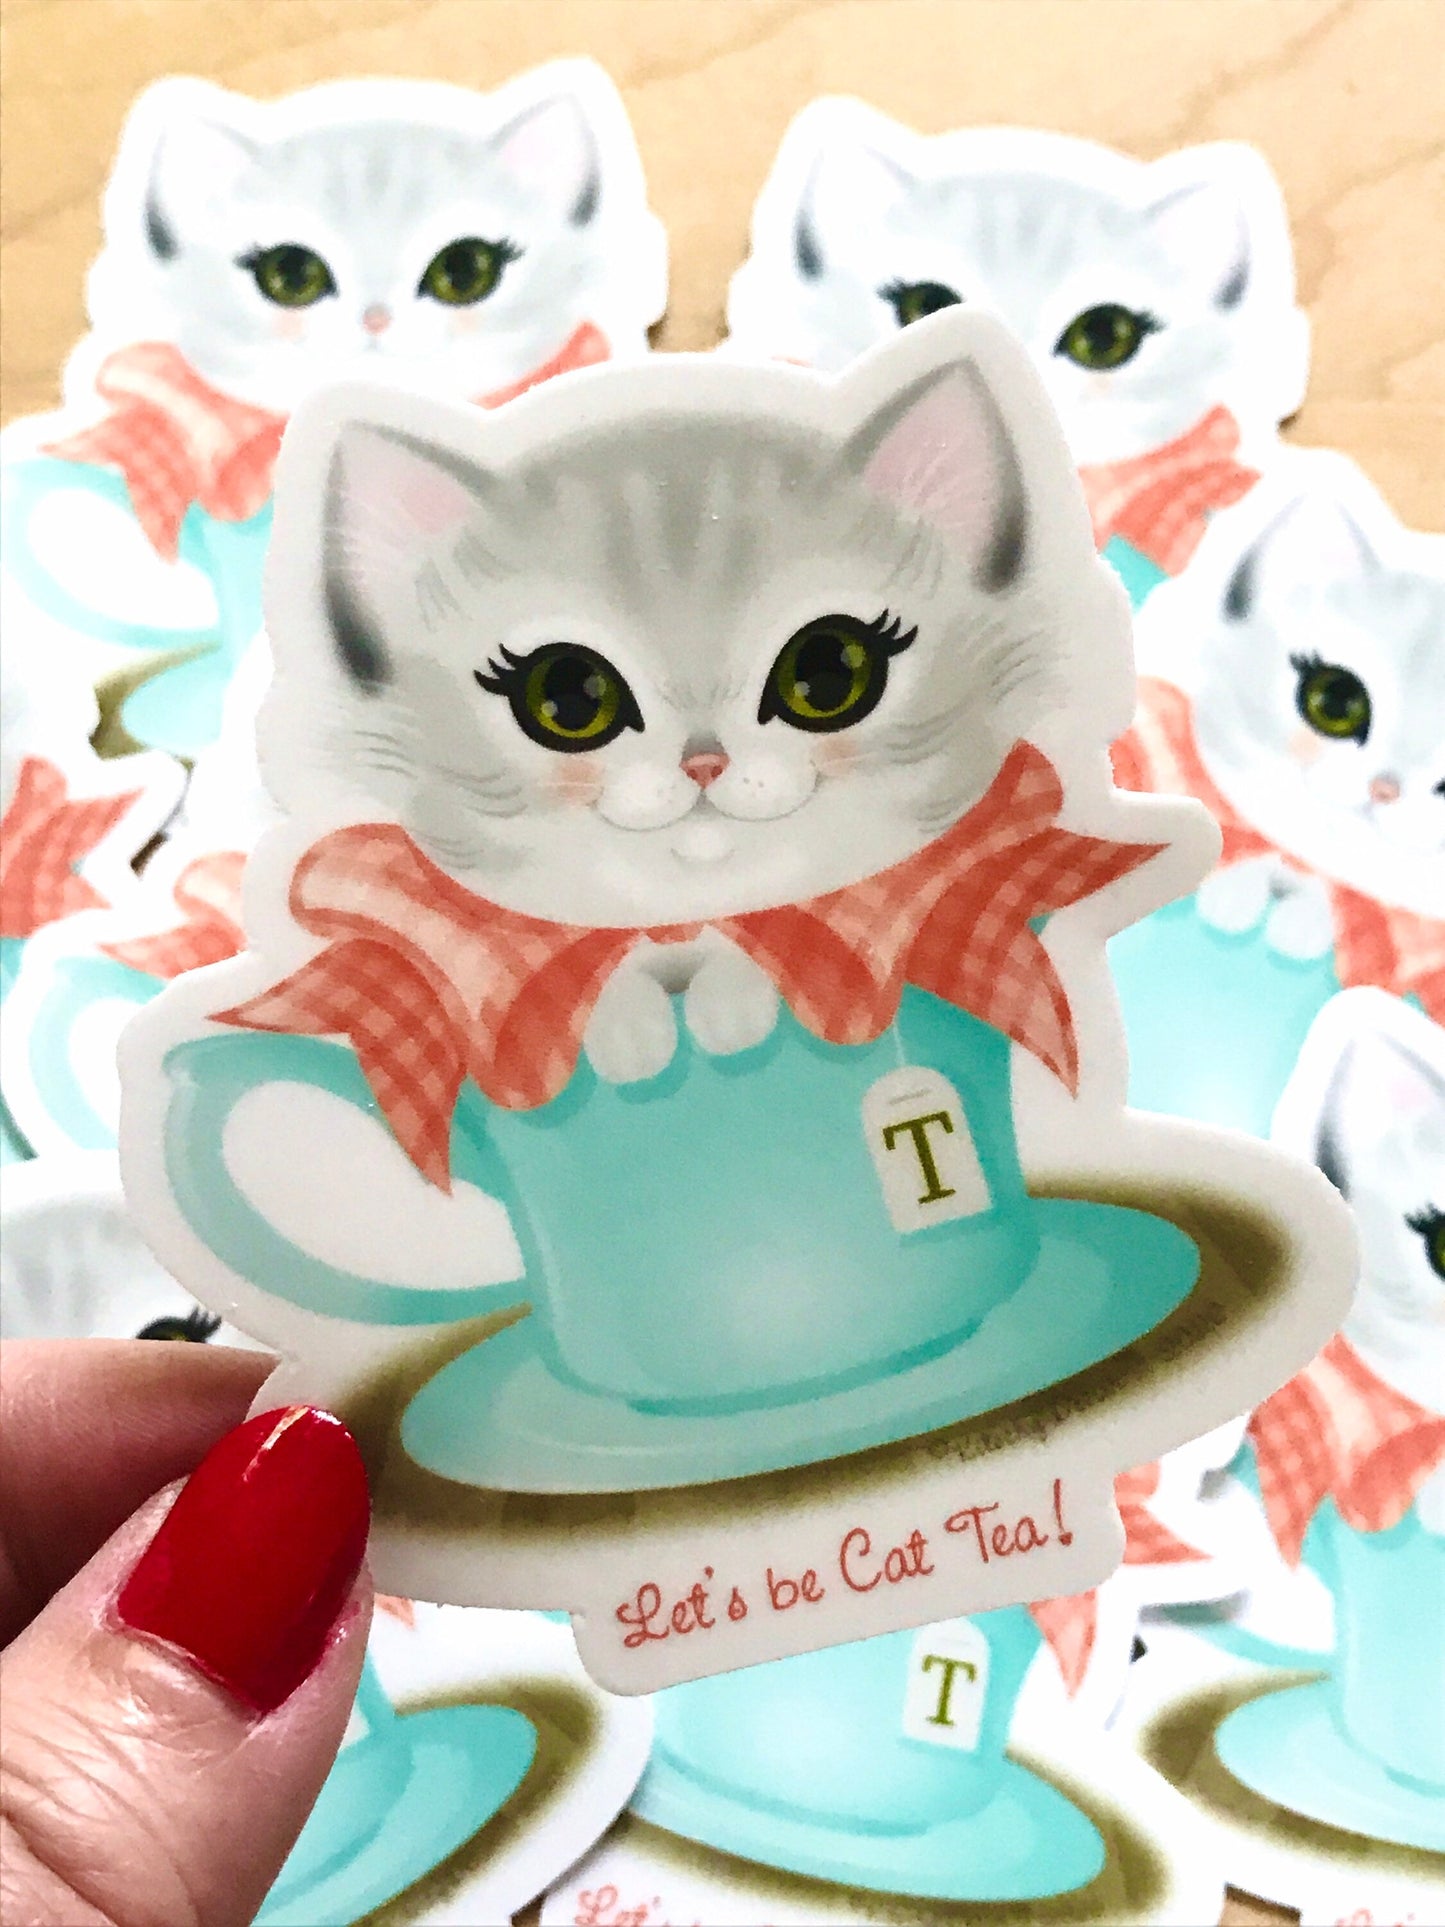 Let’s be Cat Tea vinyl sticker